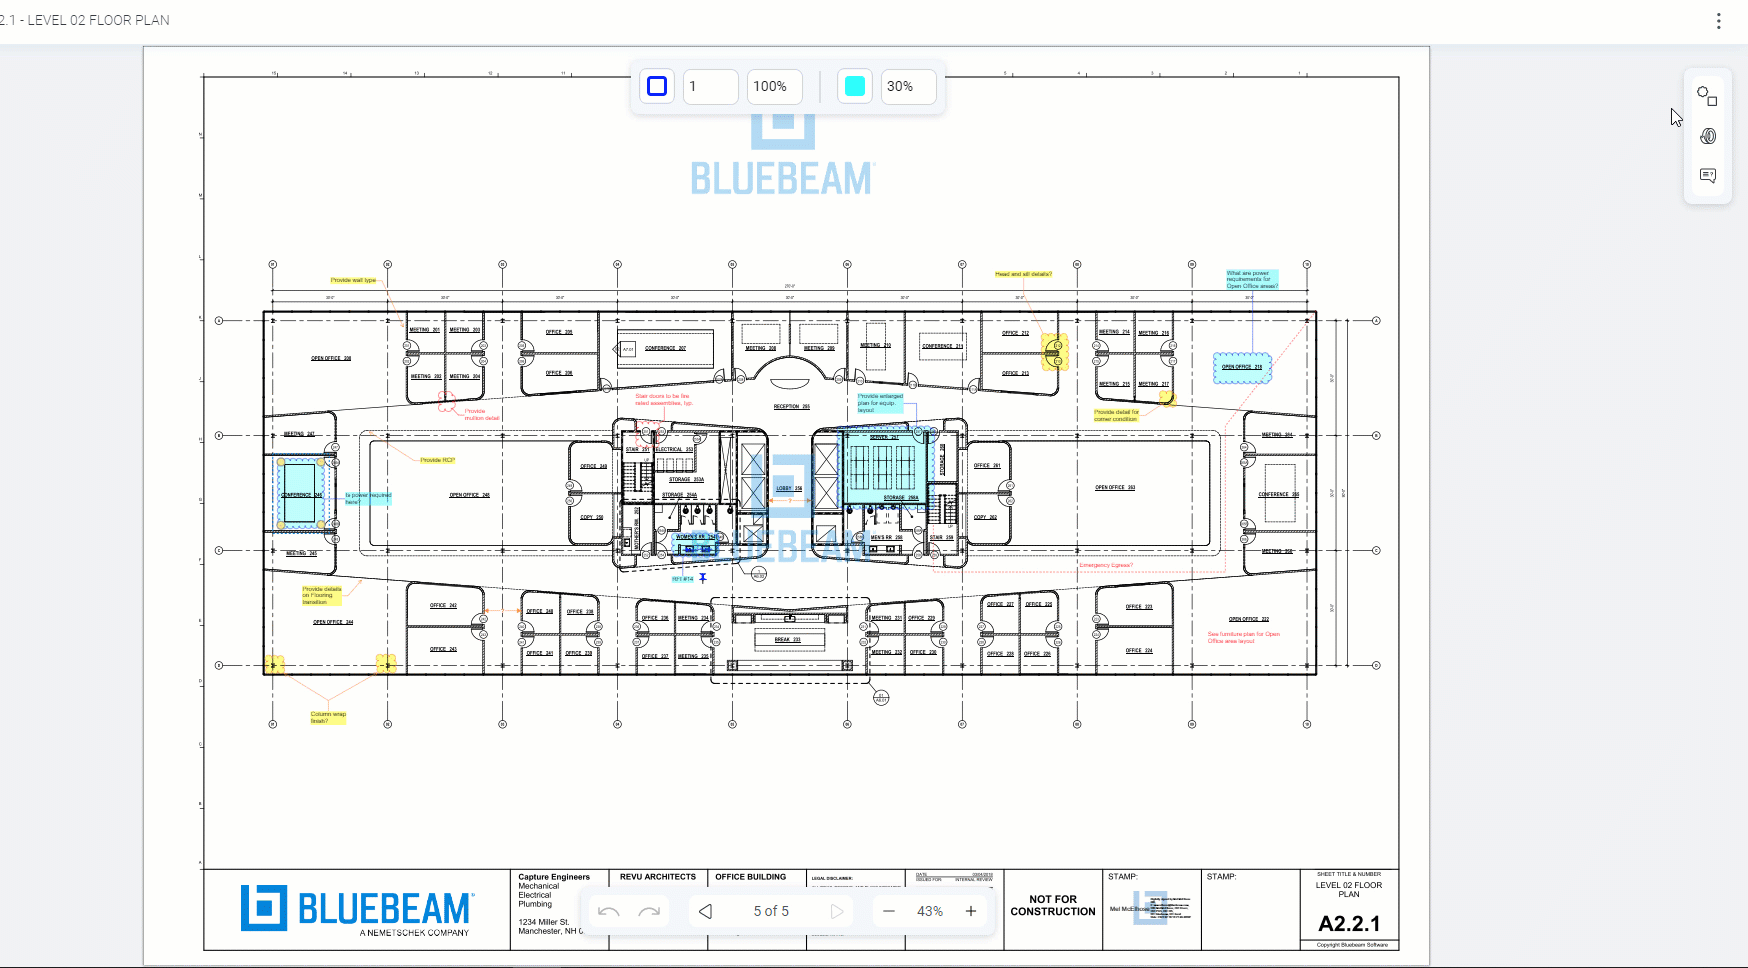 Kommentare und Formen in Bluebeam Cloud